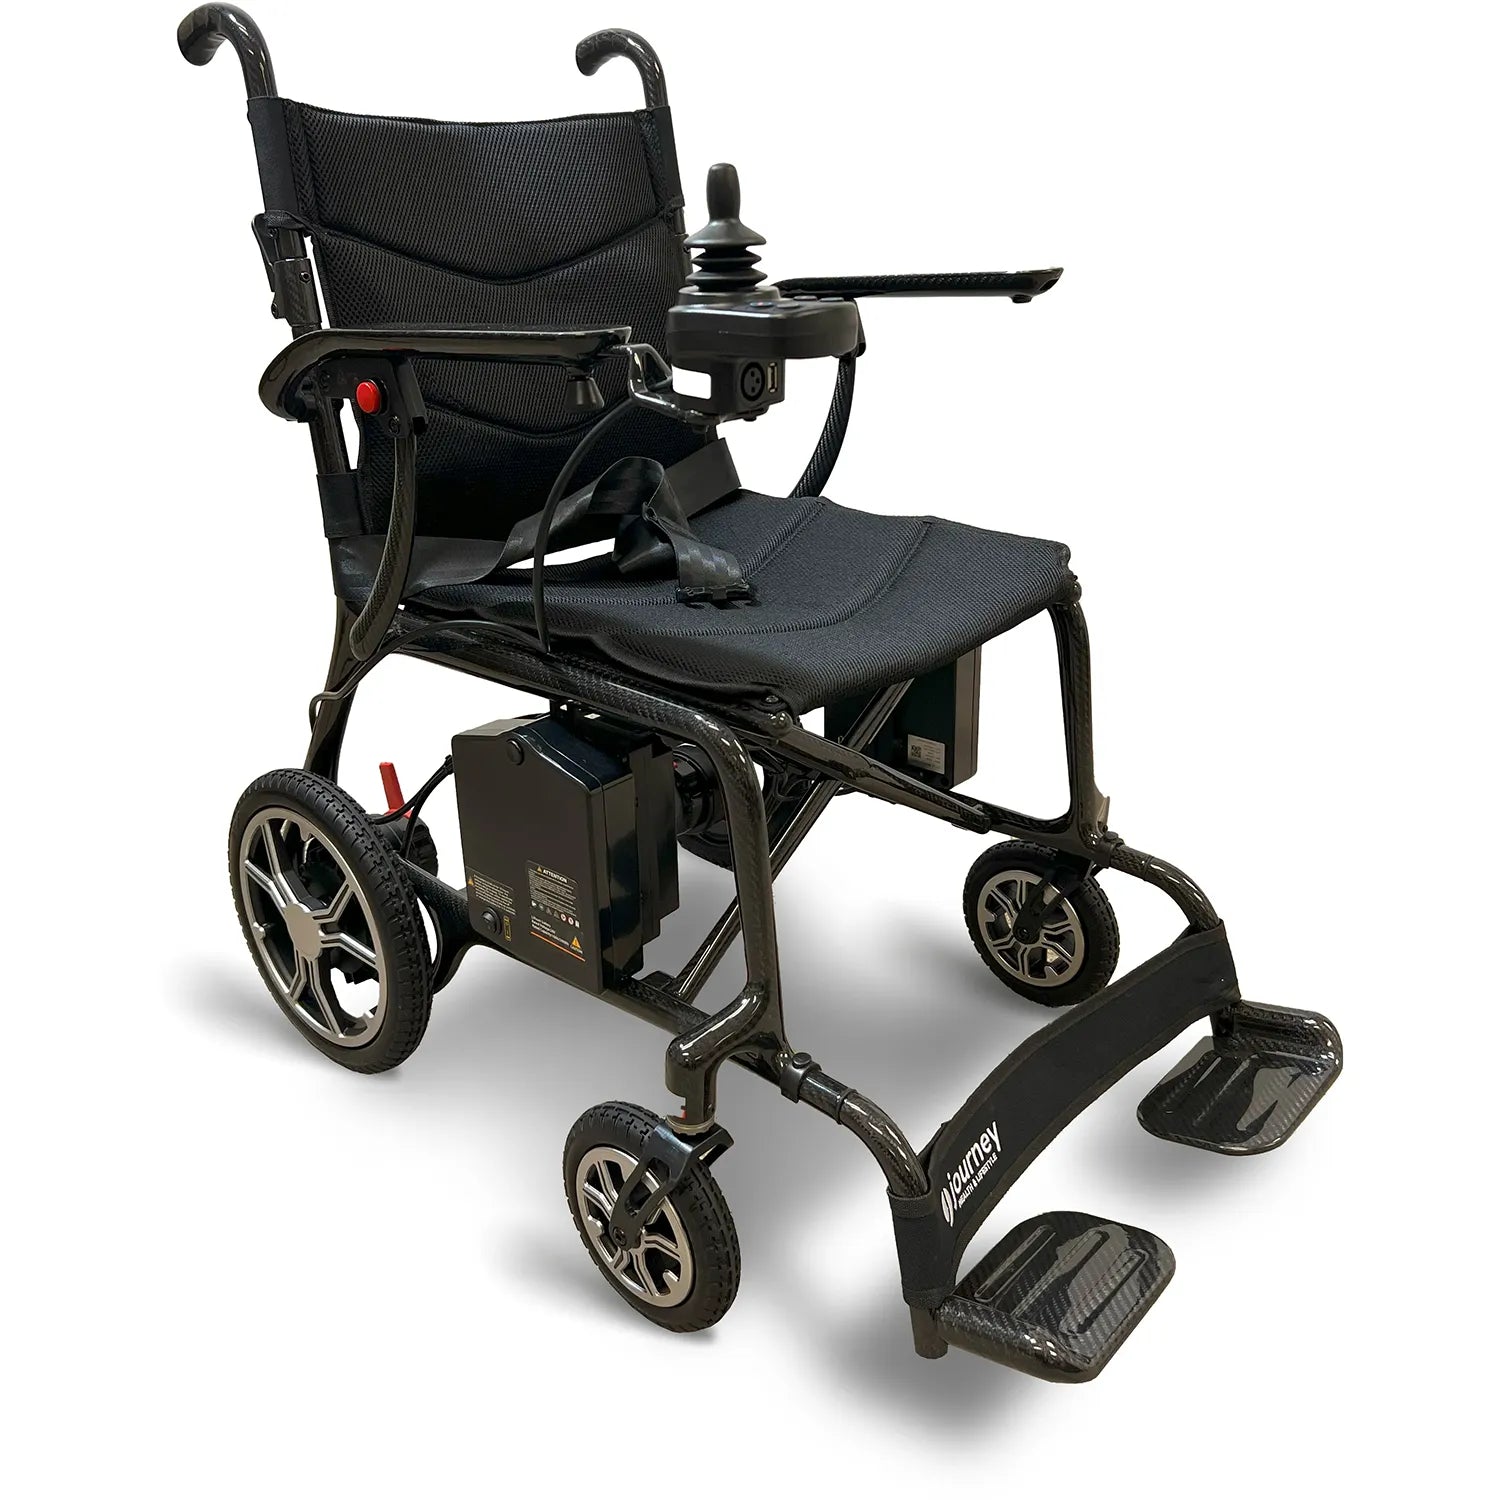 Lightest Folding Power Chair: Journey Air Elite for Seniors - Journey  Health & Lifestyle